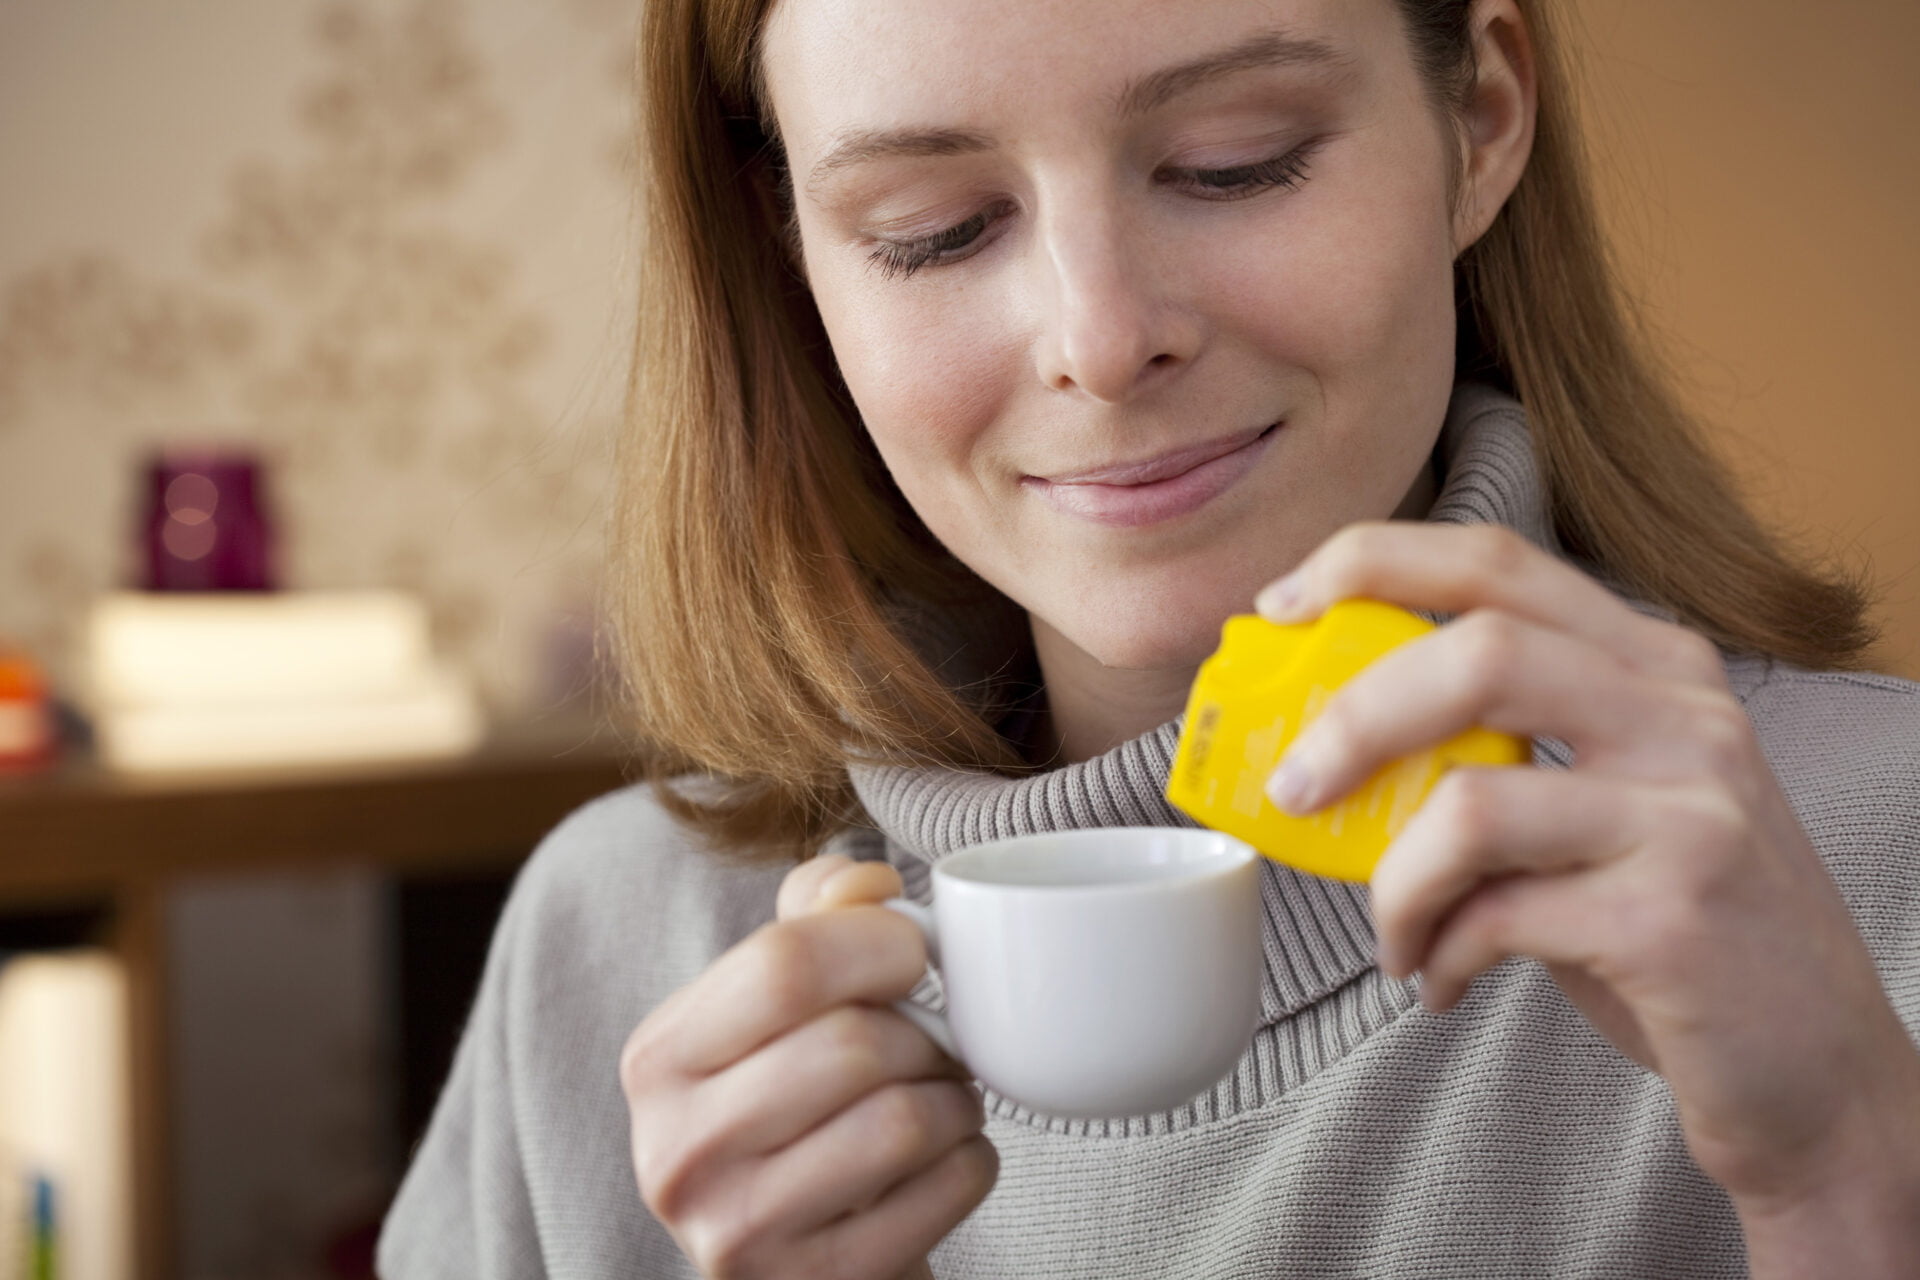 woman putting toxic sweetener in her tea